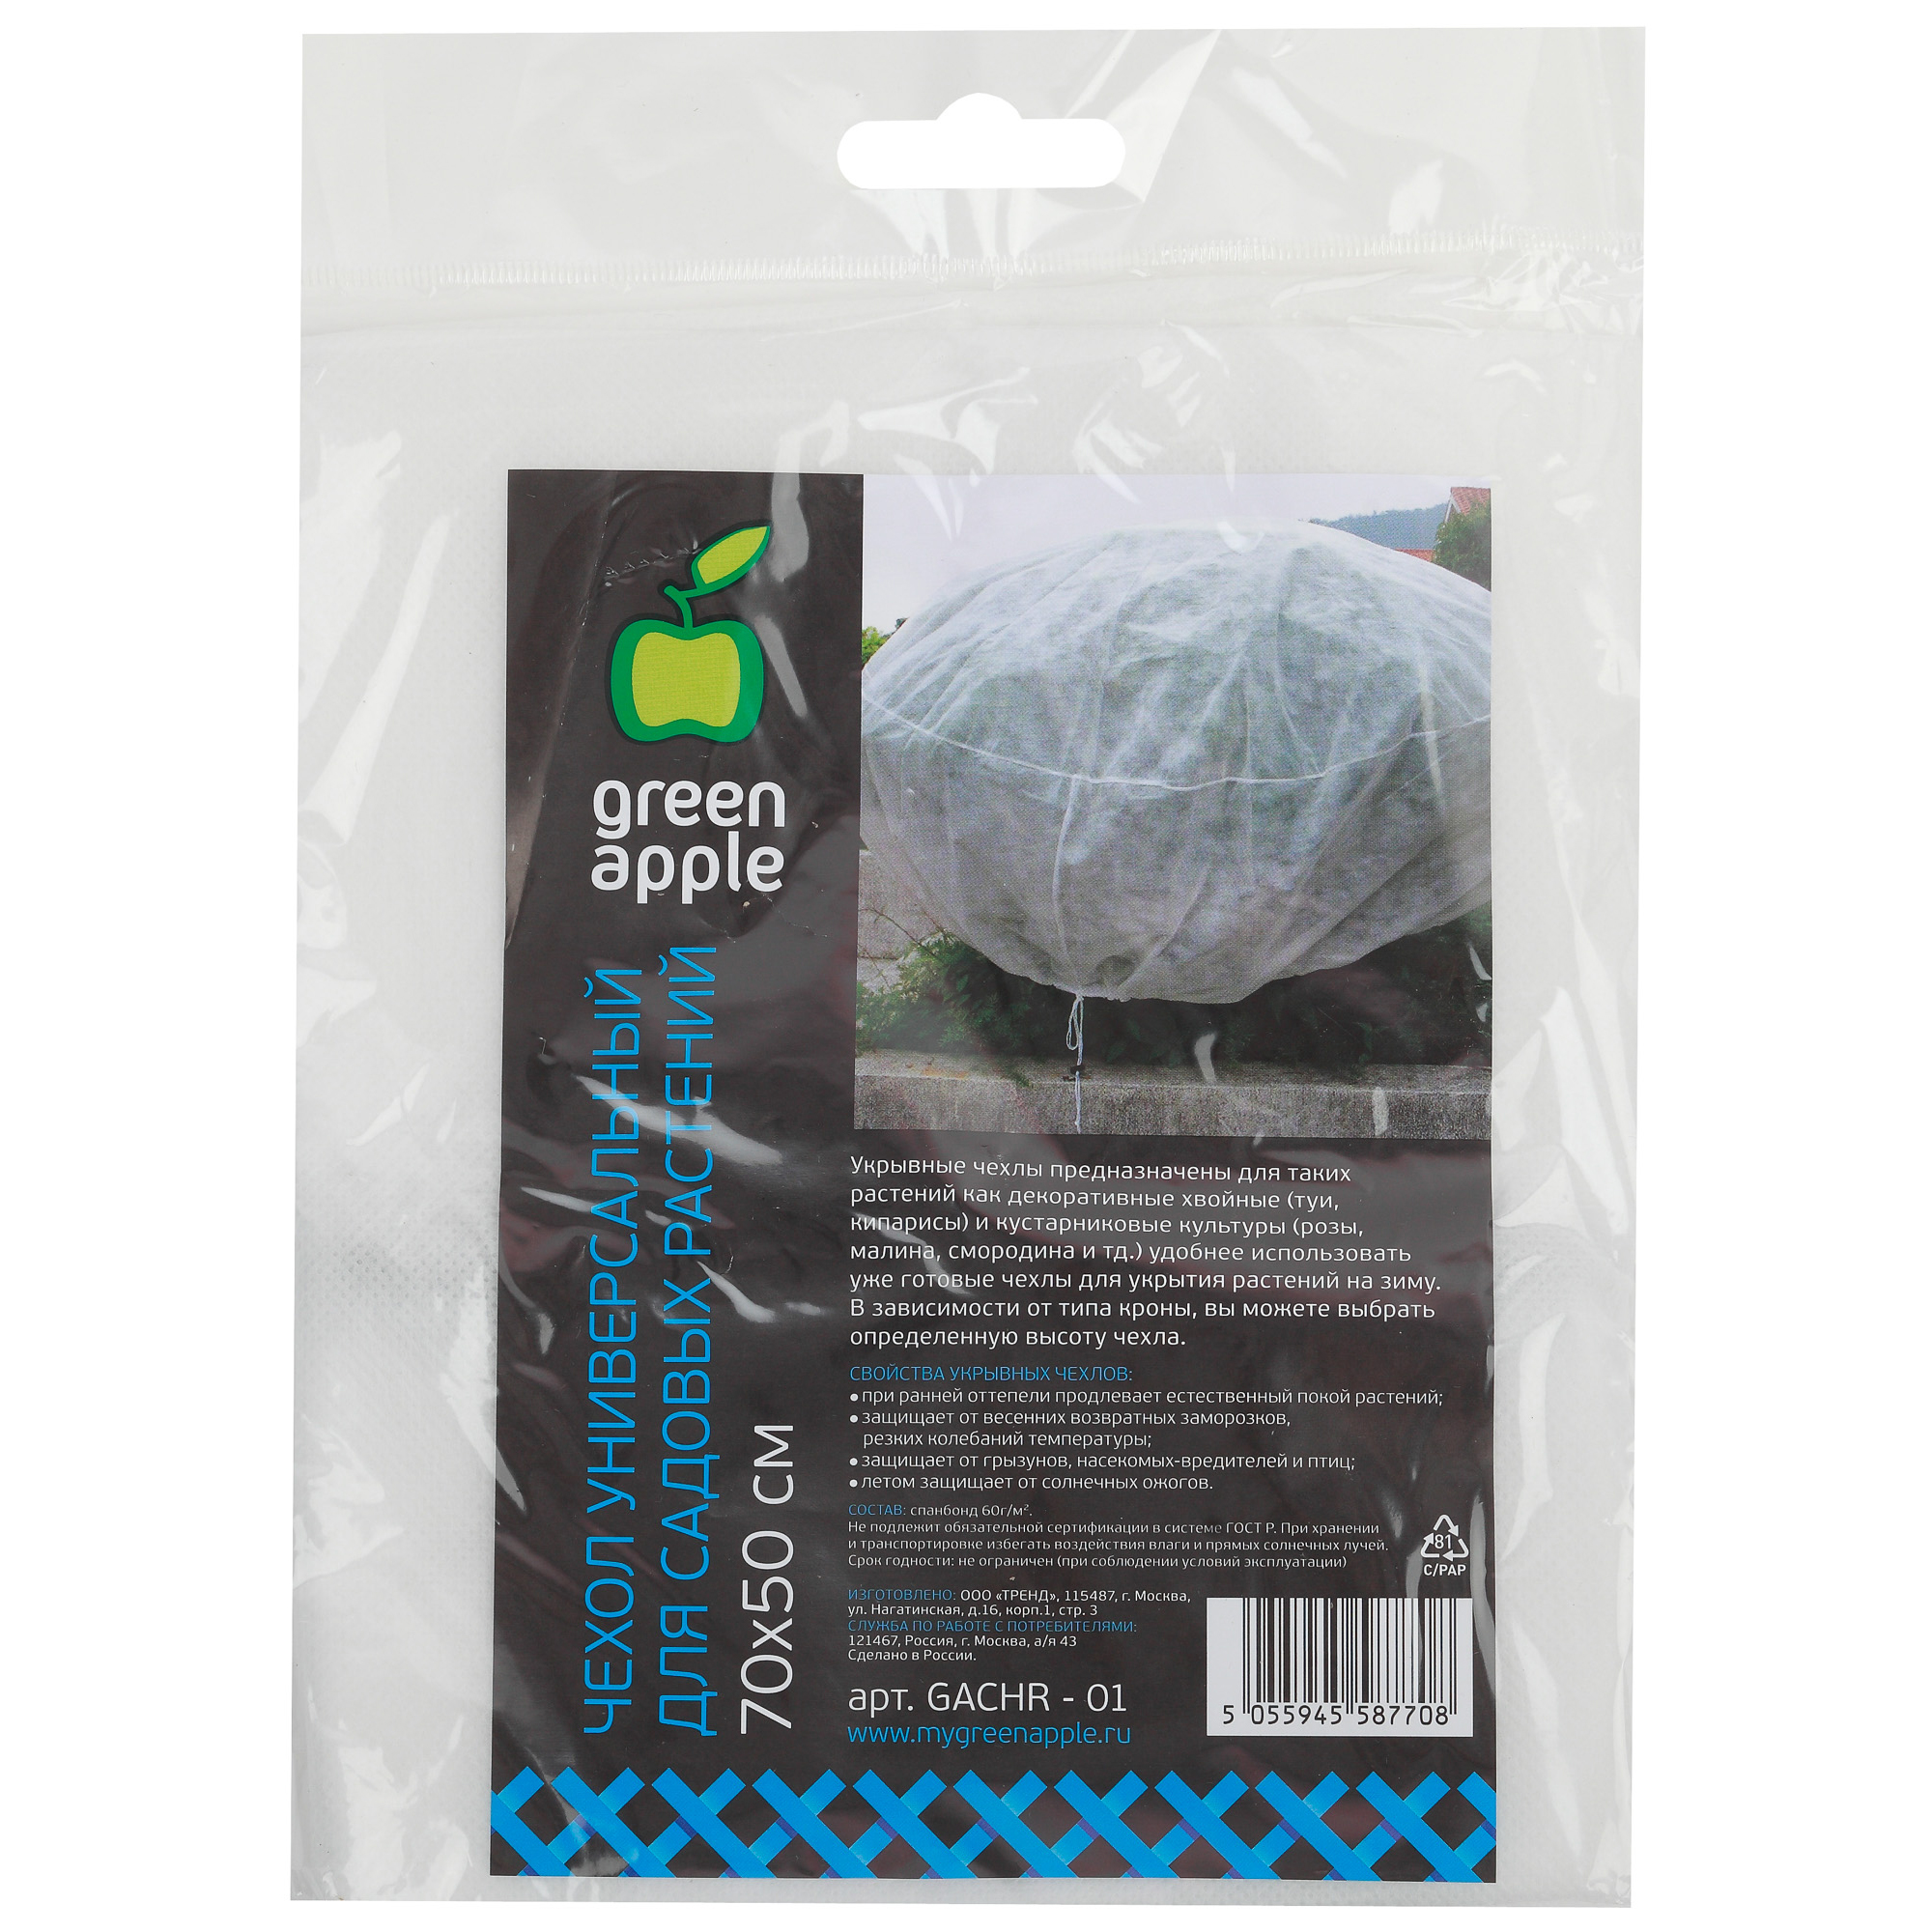 Чехол универсальный для садовых растений 70х50 см Green apple Gachr-01